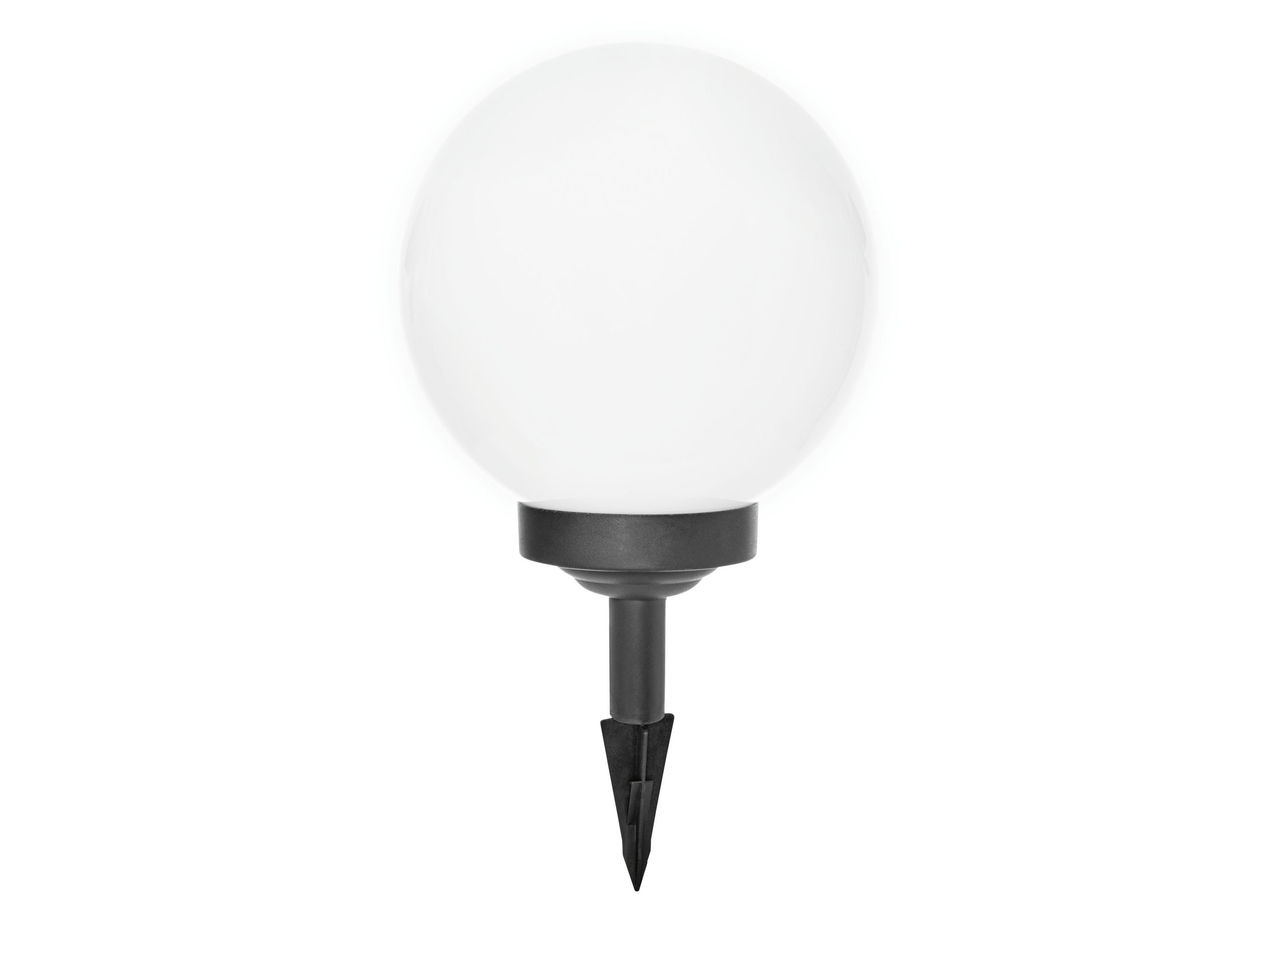 25cm Solar-Powered LED Light Ball